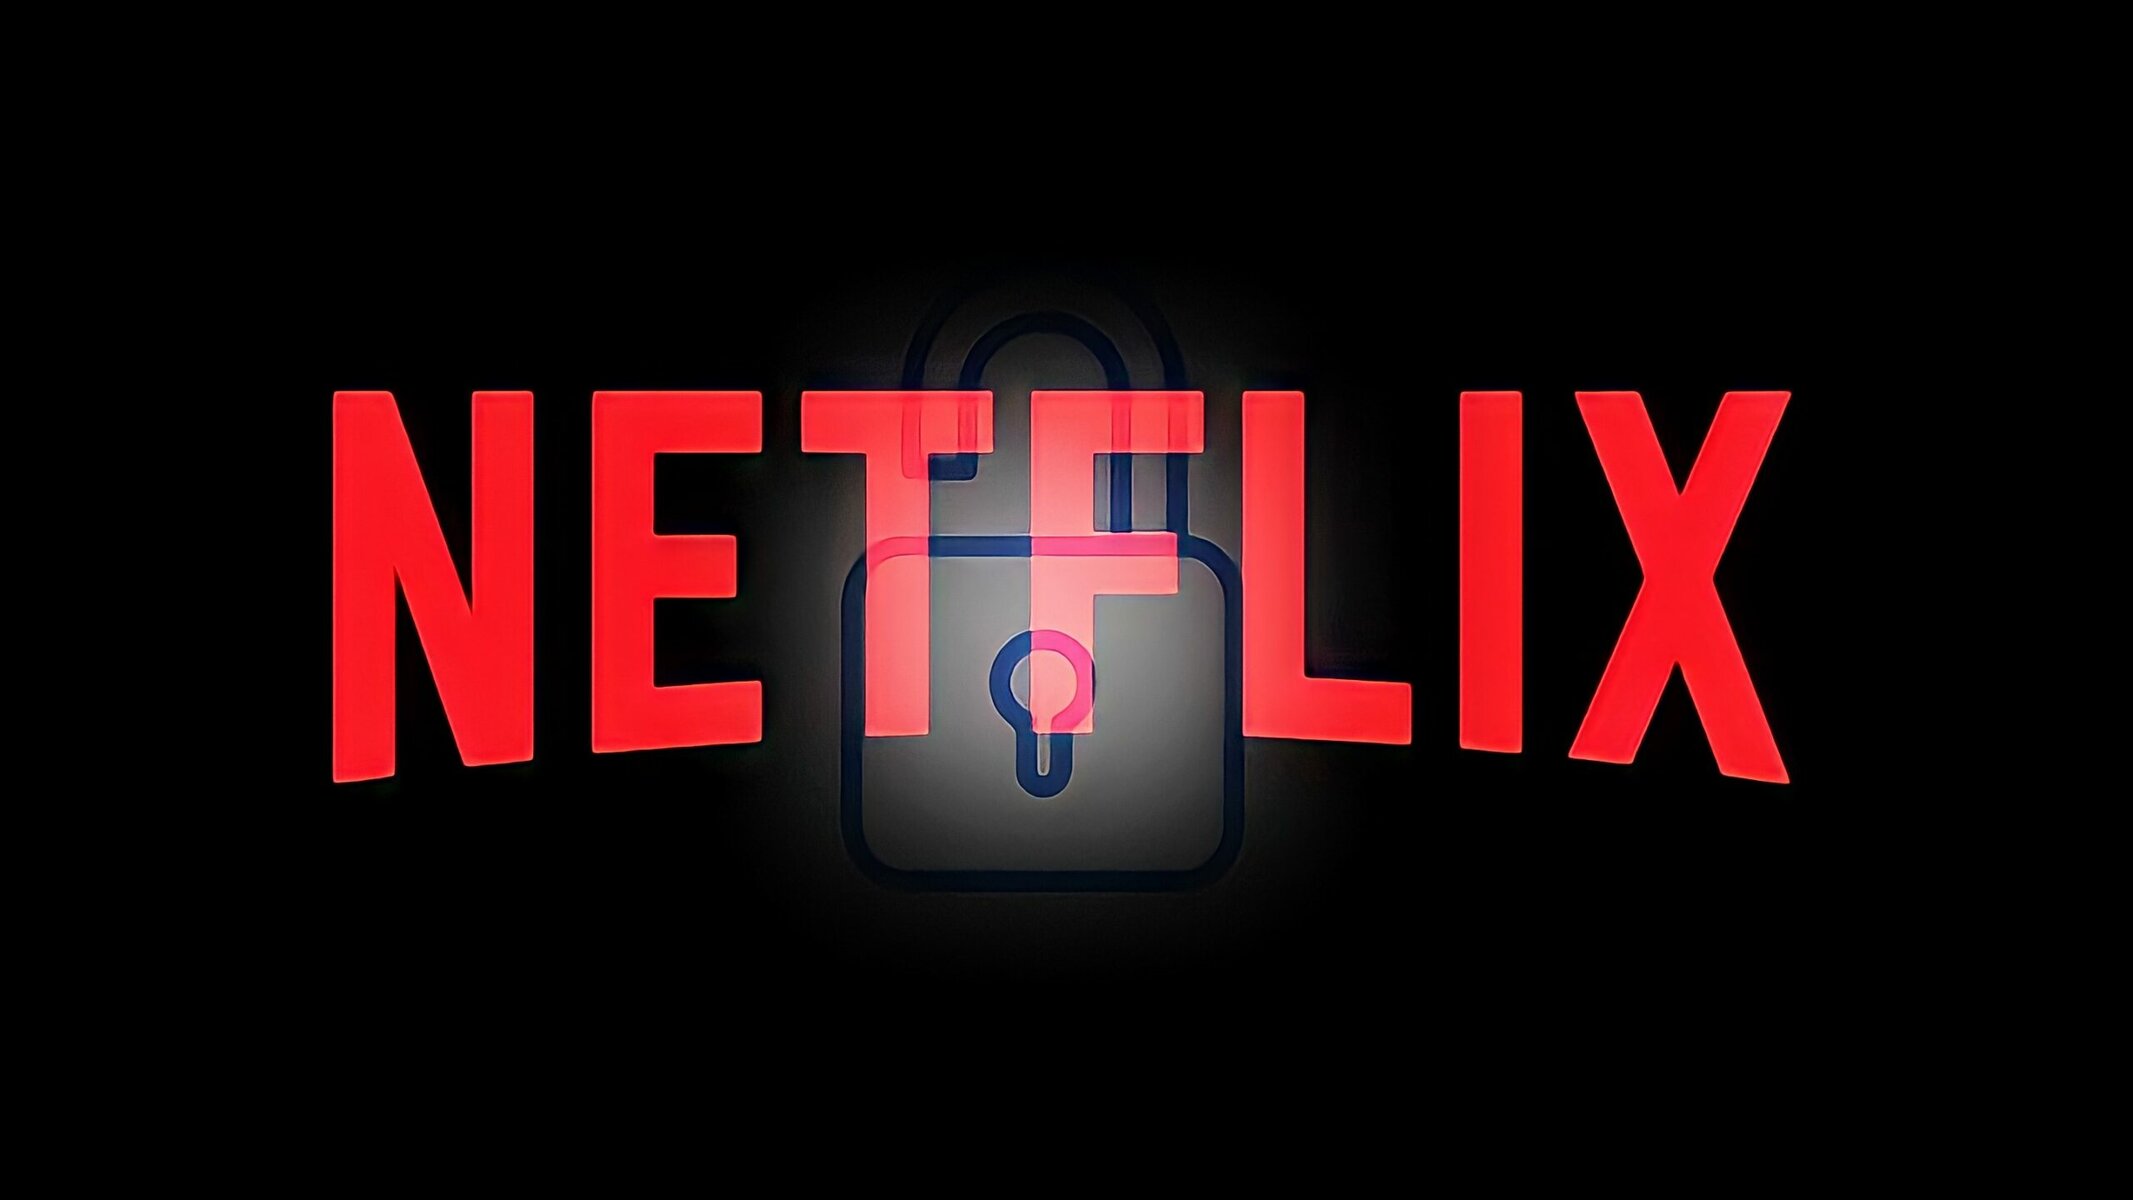 Códigos secretos das categorias da Netflix